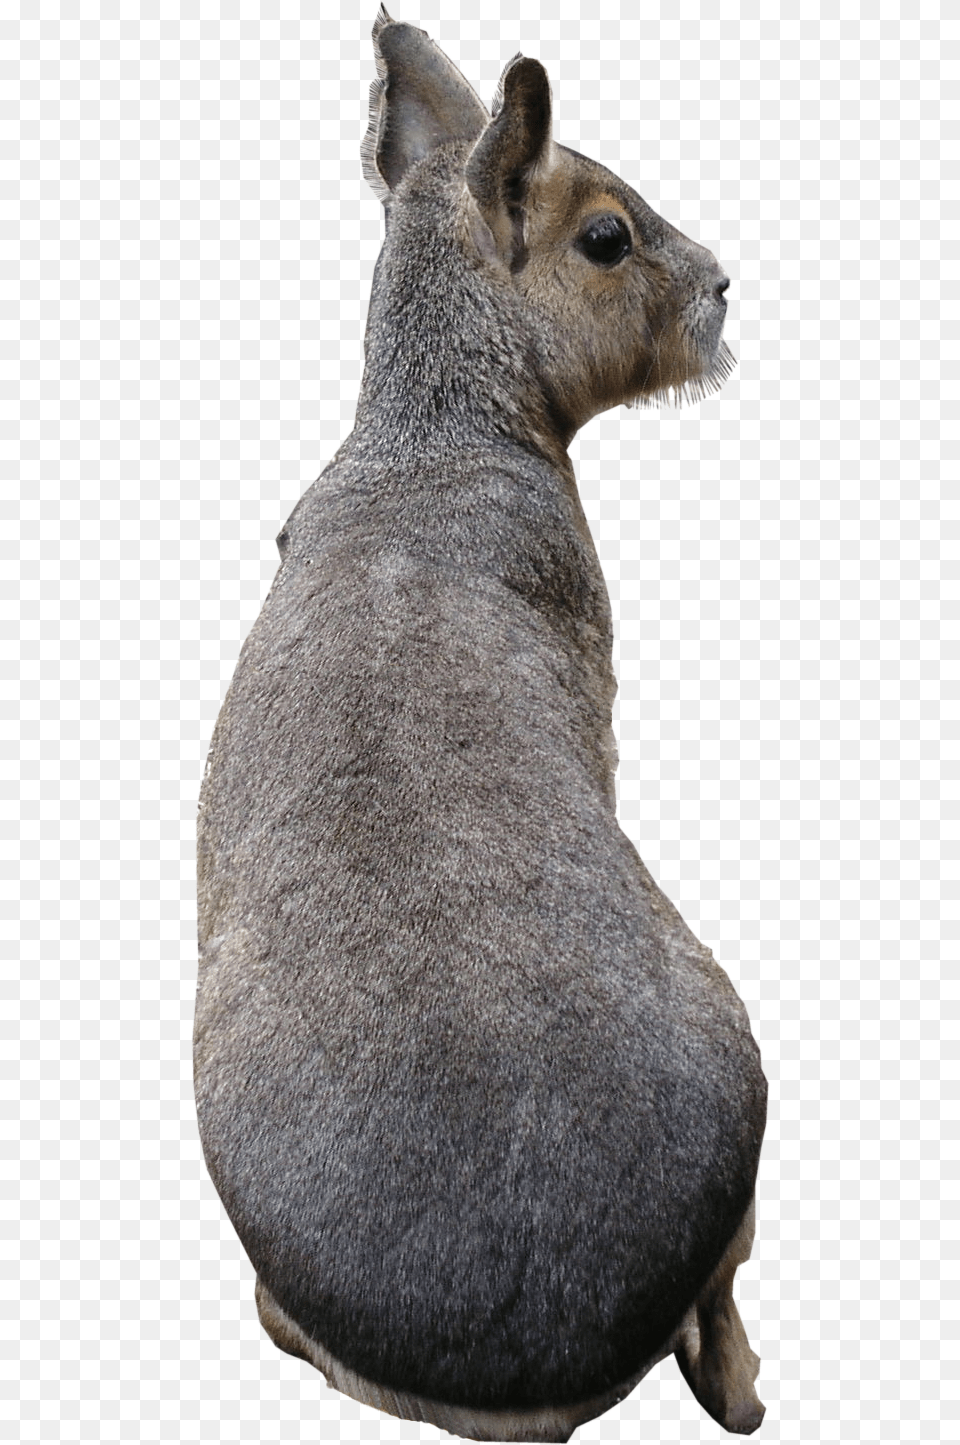 Patagonian Mara Texture, Animal, Mammal, Kangaroo Free Transparent Png